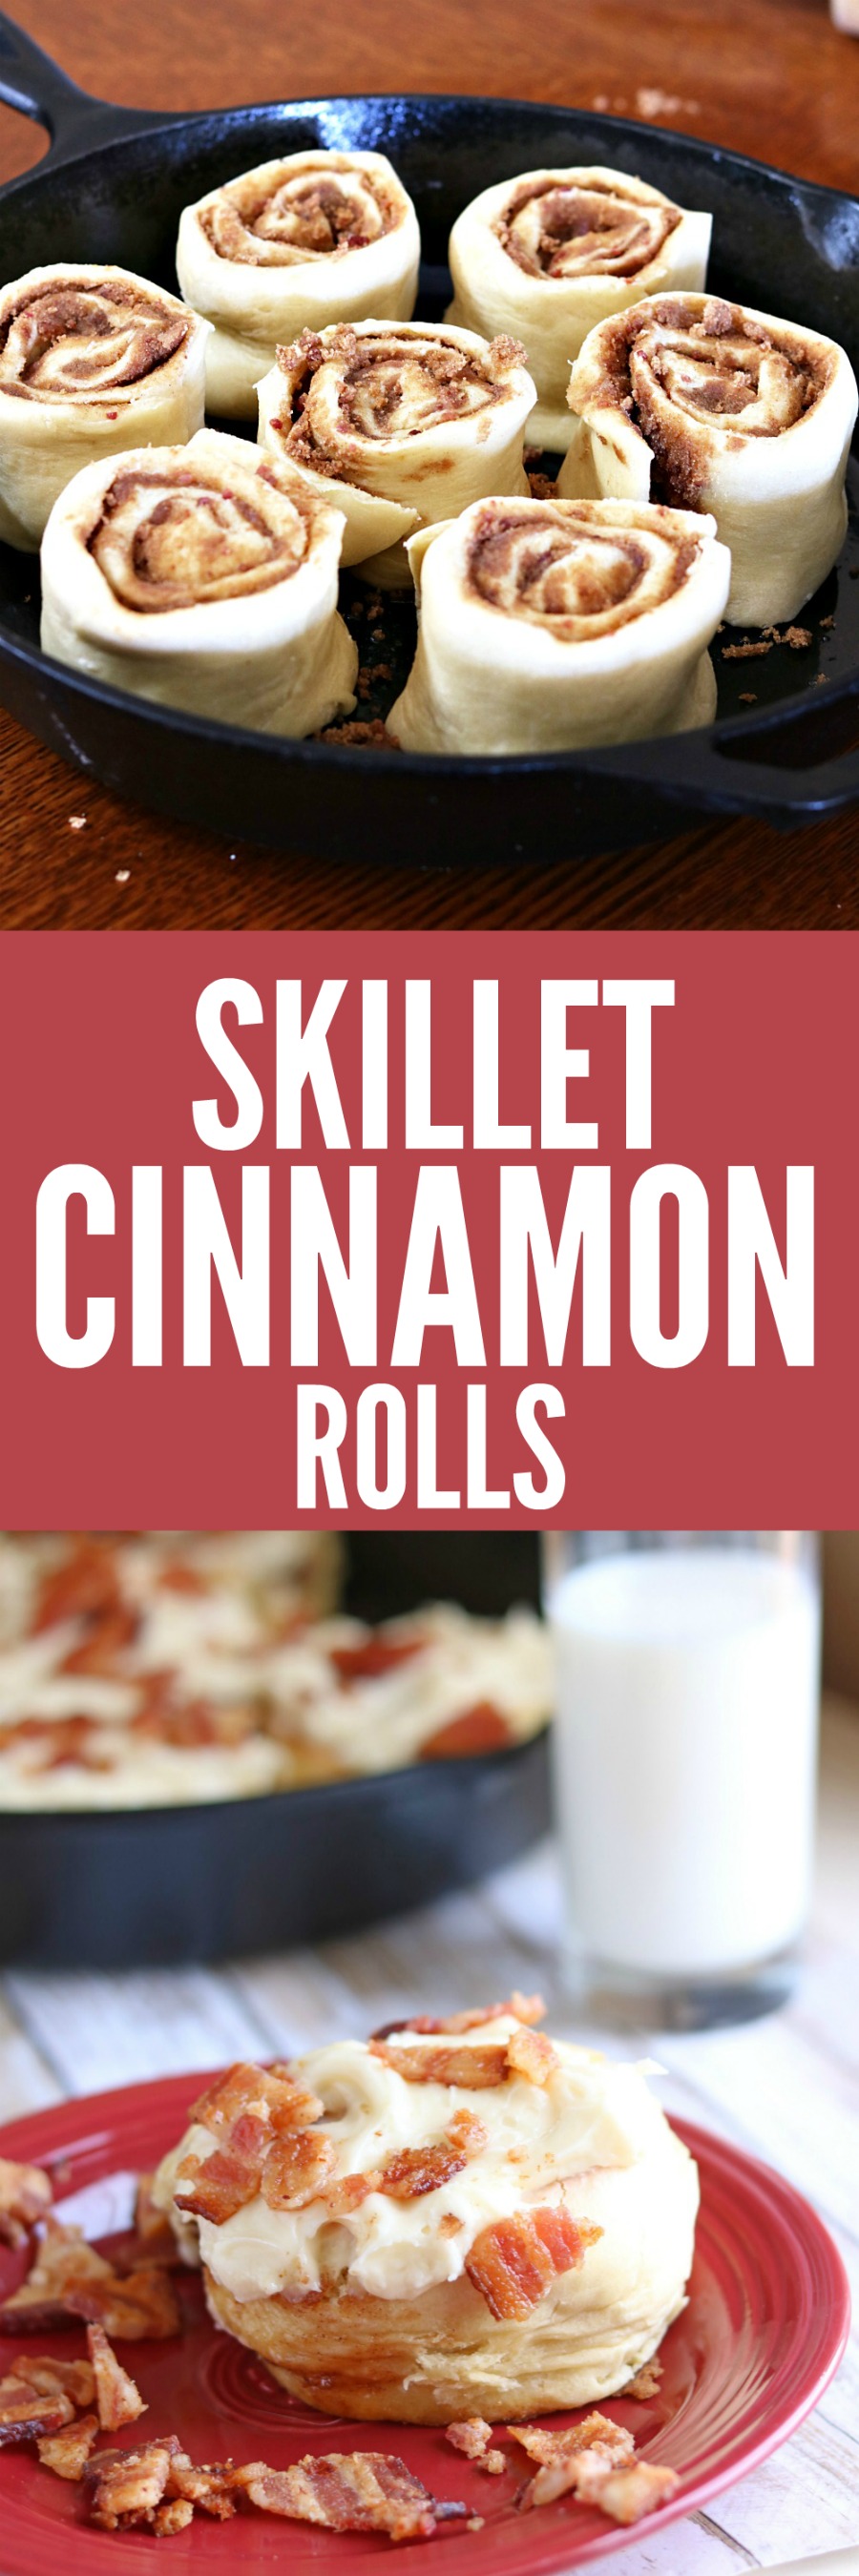 Skillet Cinnamon Rolls